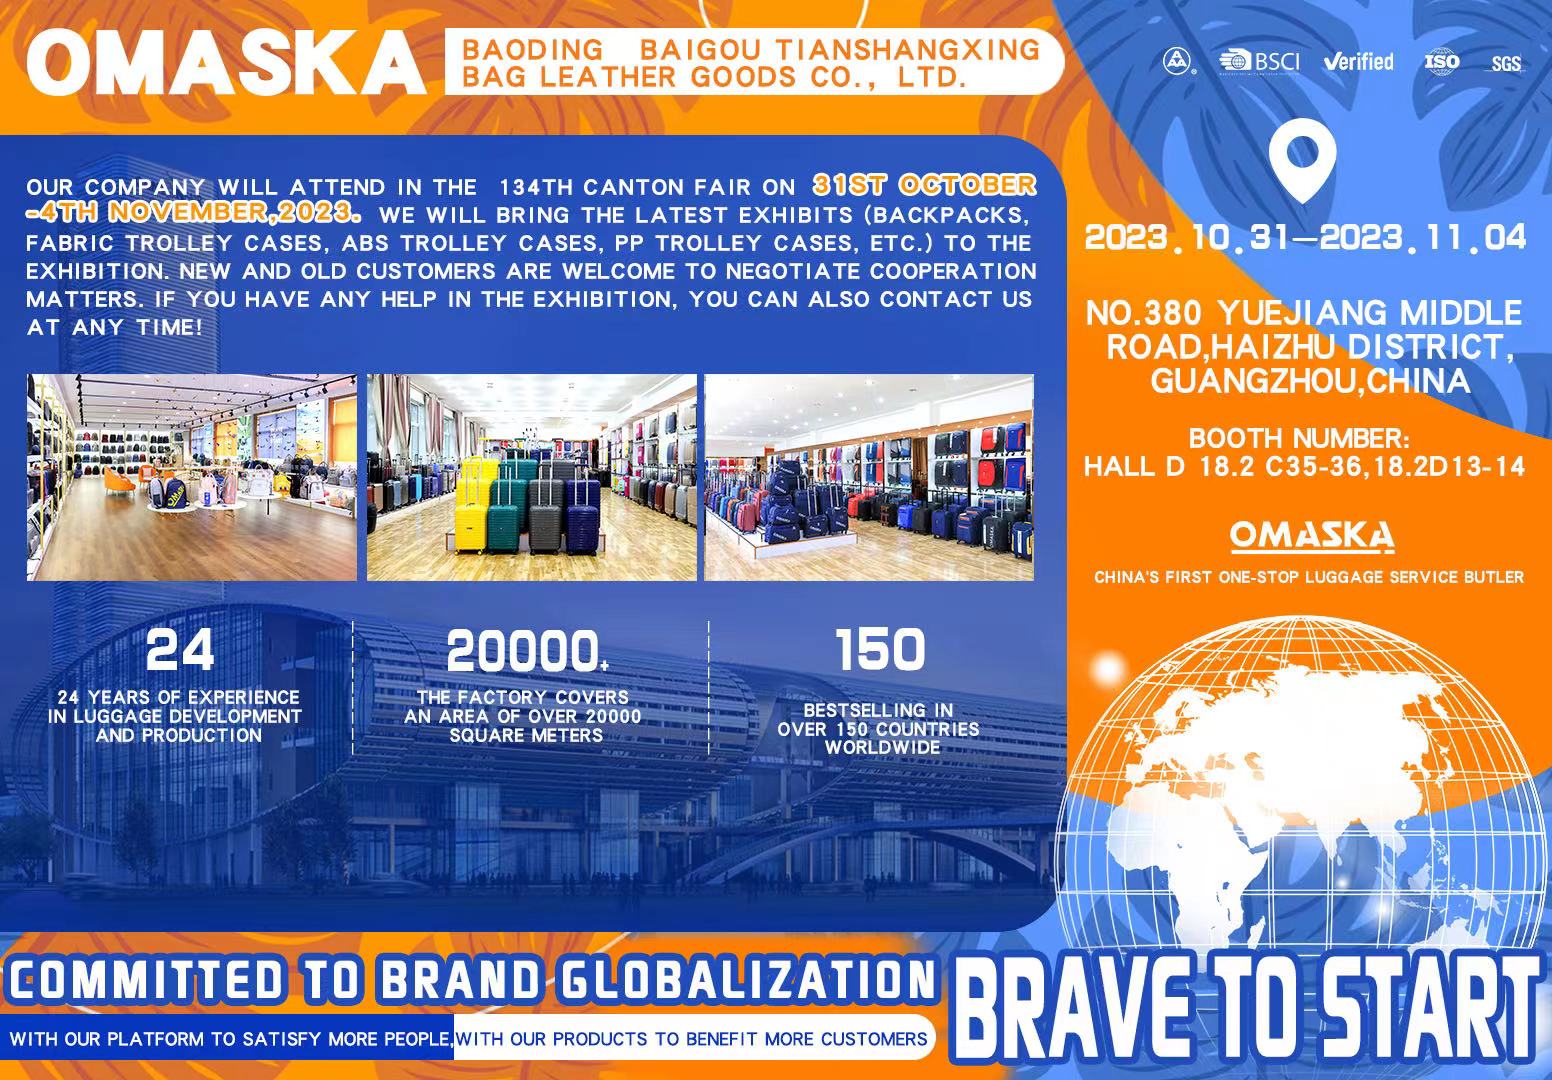 Omaska® sil bagaazje mei Sina's top produksjetechnology nei de 134e Canton Fair bringe